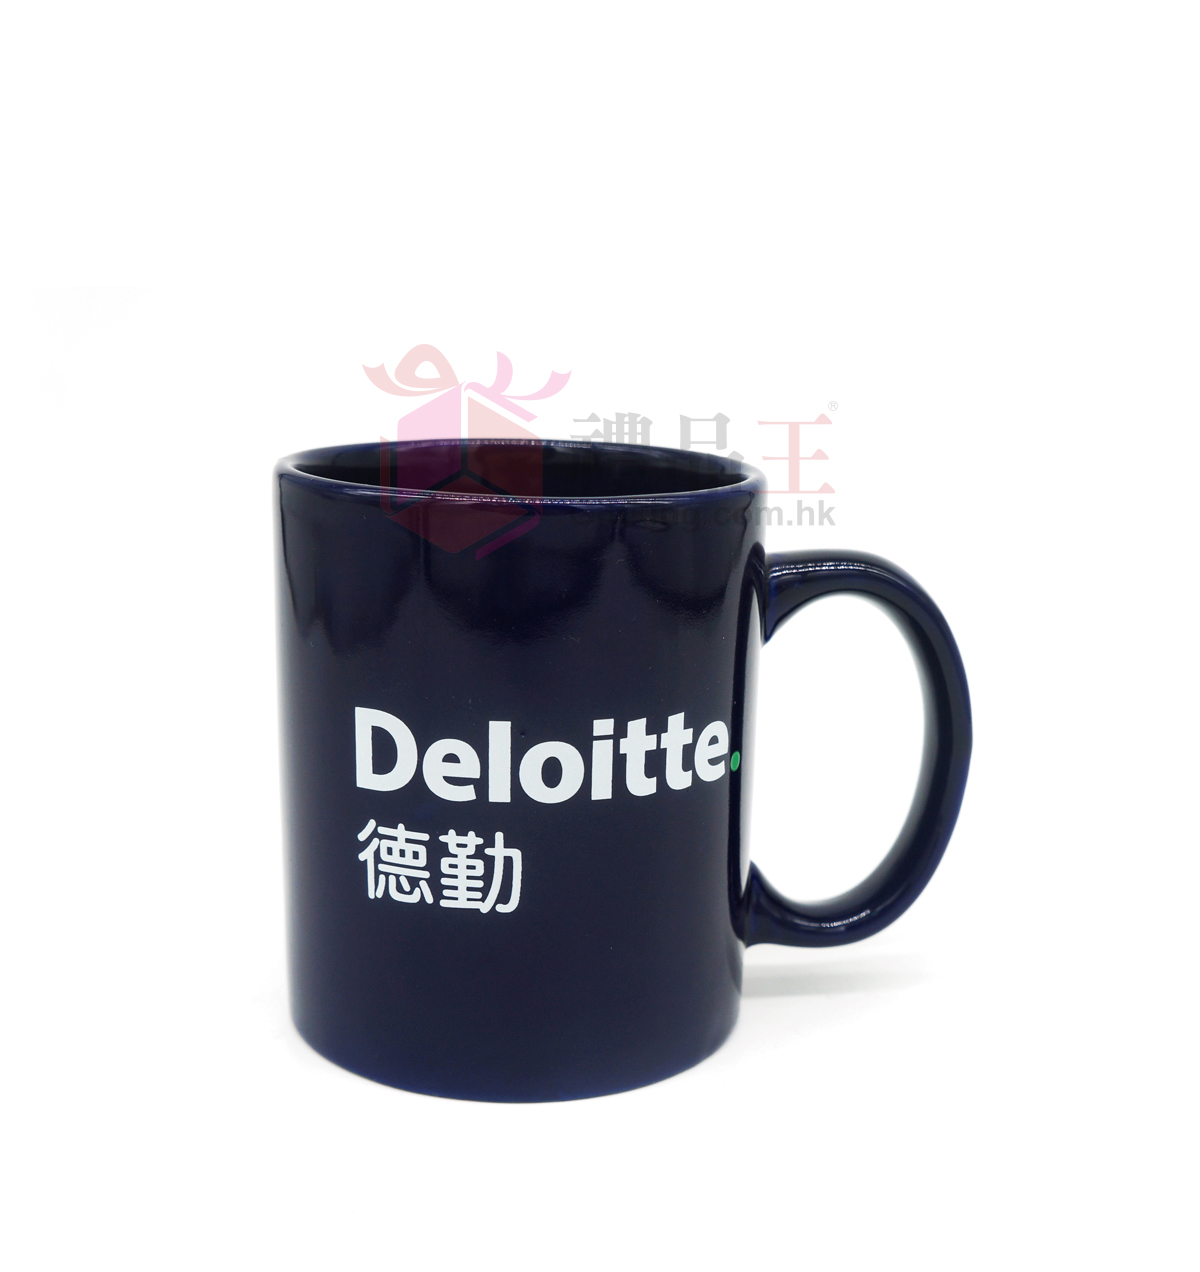 Deloitte ceramic mug (Advertising gift)